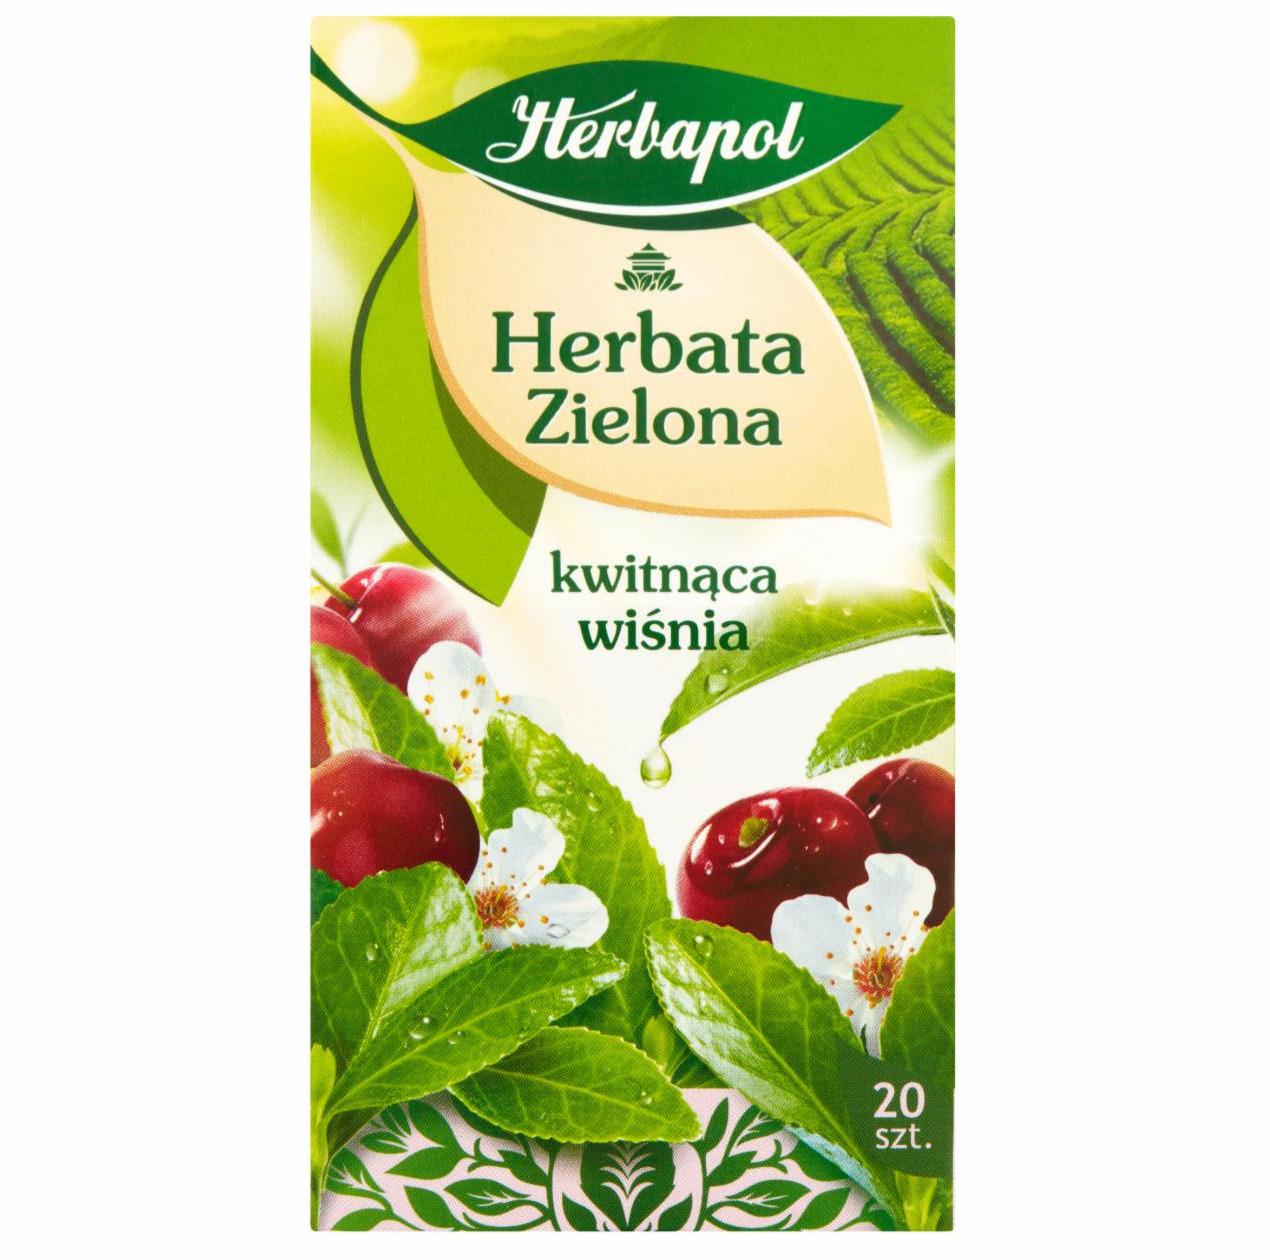 Zdjęcia - Herbata zielona kwitnąca wiśnia 34 g (20 x 1,7 g) Herbapol